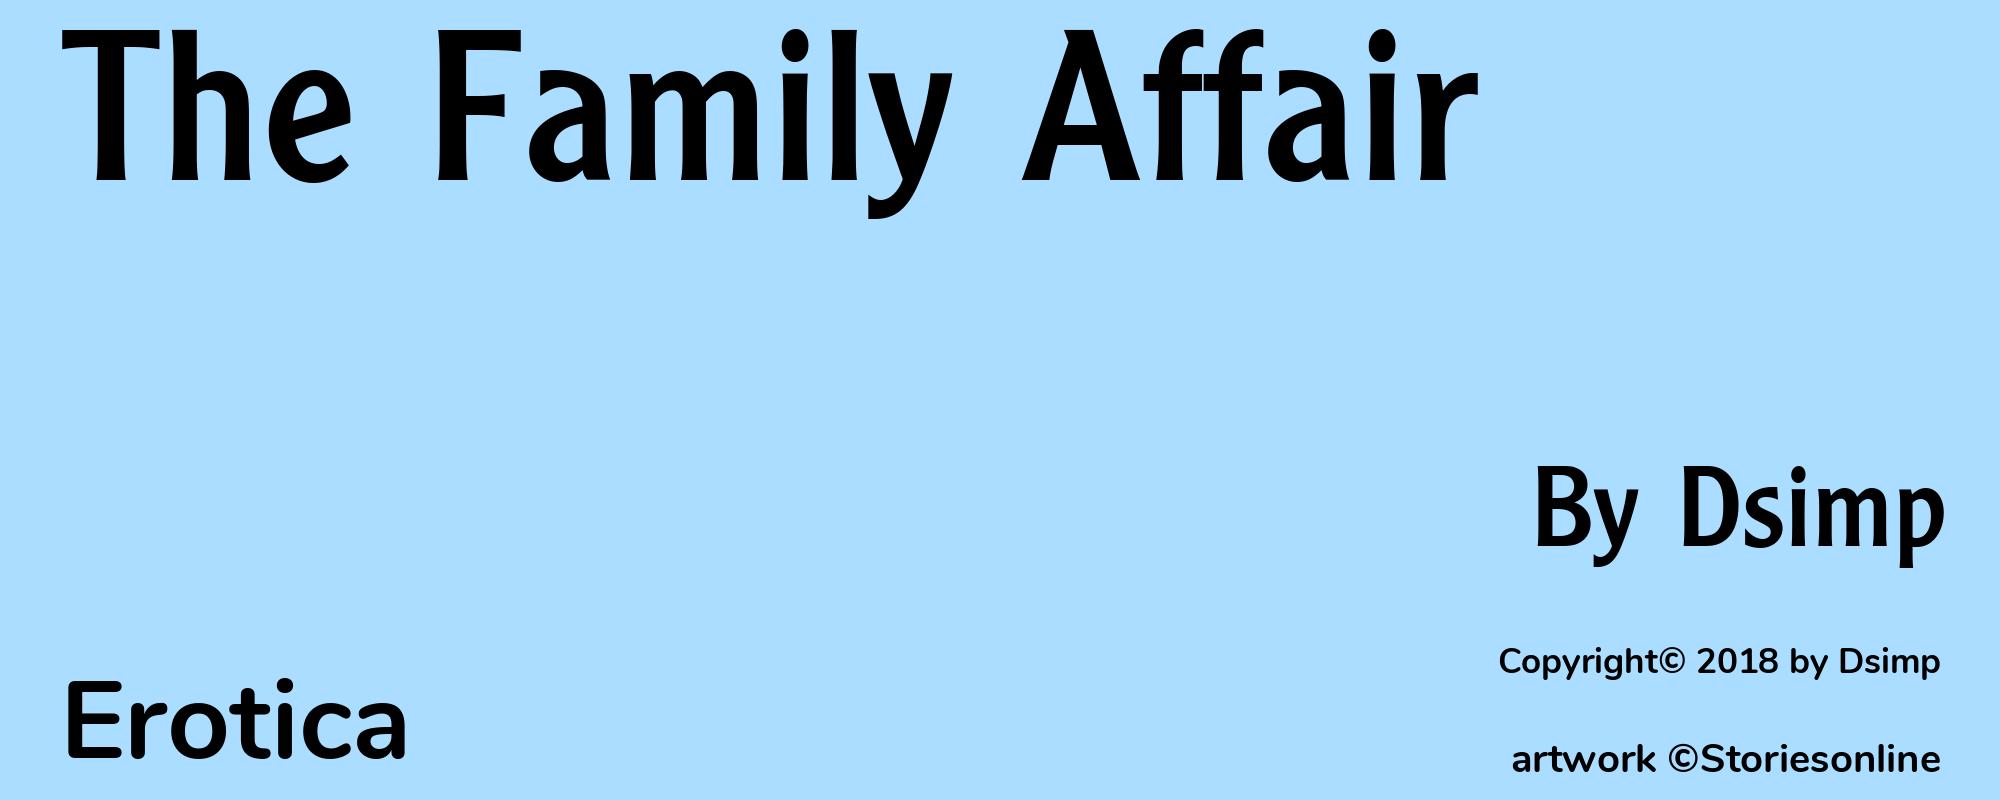 The Family Affair - Cover